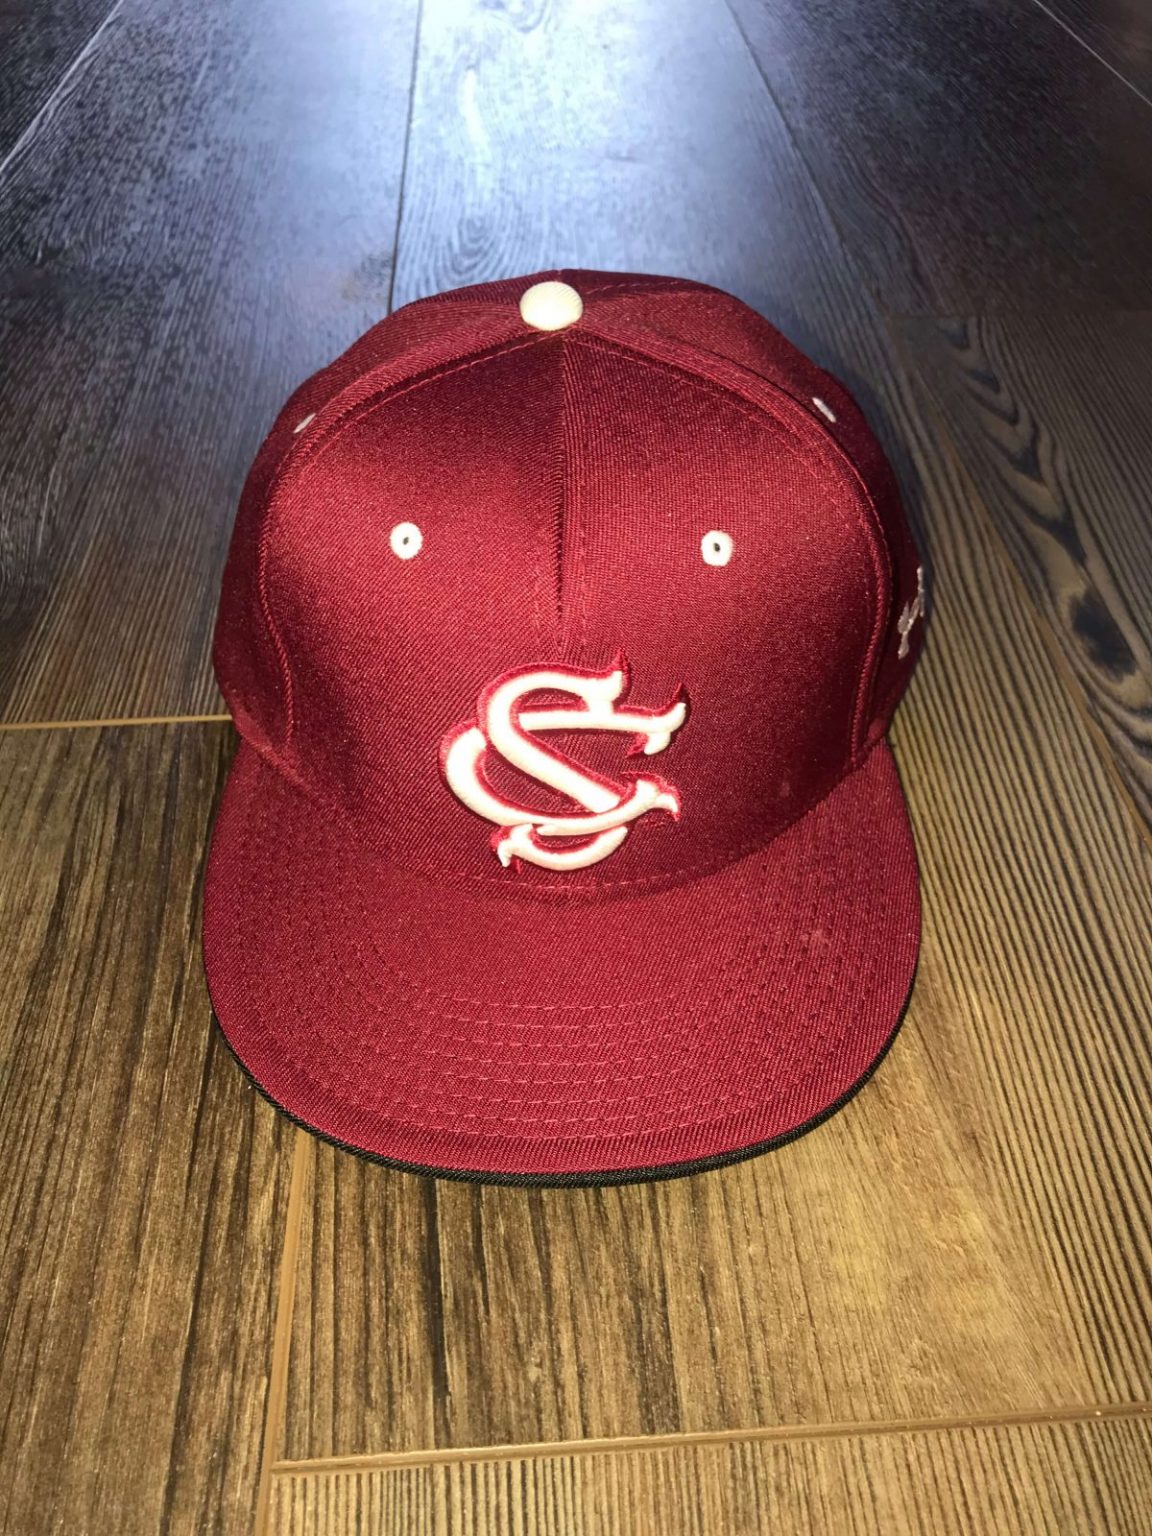 South Carolina Baseball Hat : NARP Clothing